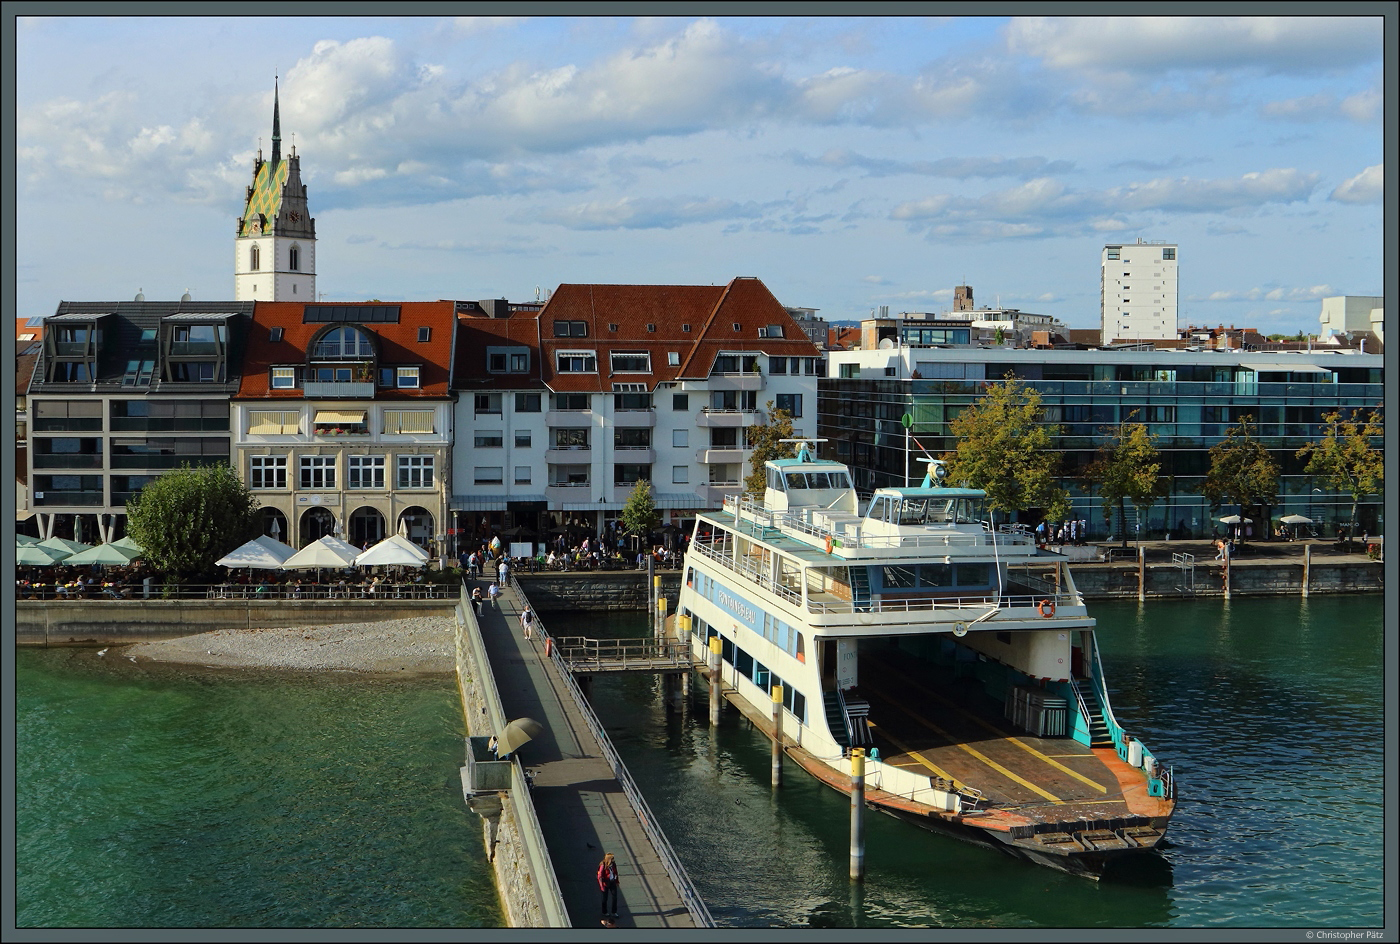 In Friedrichshafen liegt am 04.10.2023 die wenige Tage zuvor ausgemusterte Fähre  Fontainebleau  vor Anker. Sie wurde 1970 in Dienst gestellt und soll als Clubheim für einen Yachtclub umgebaut werden.